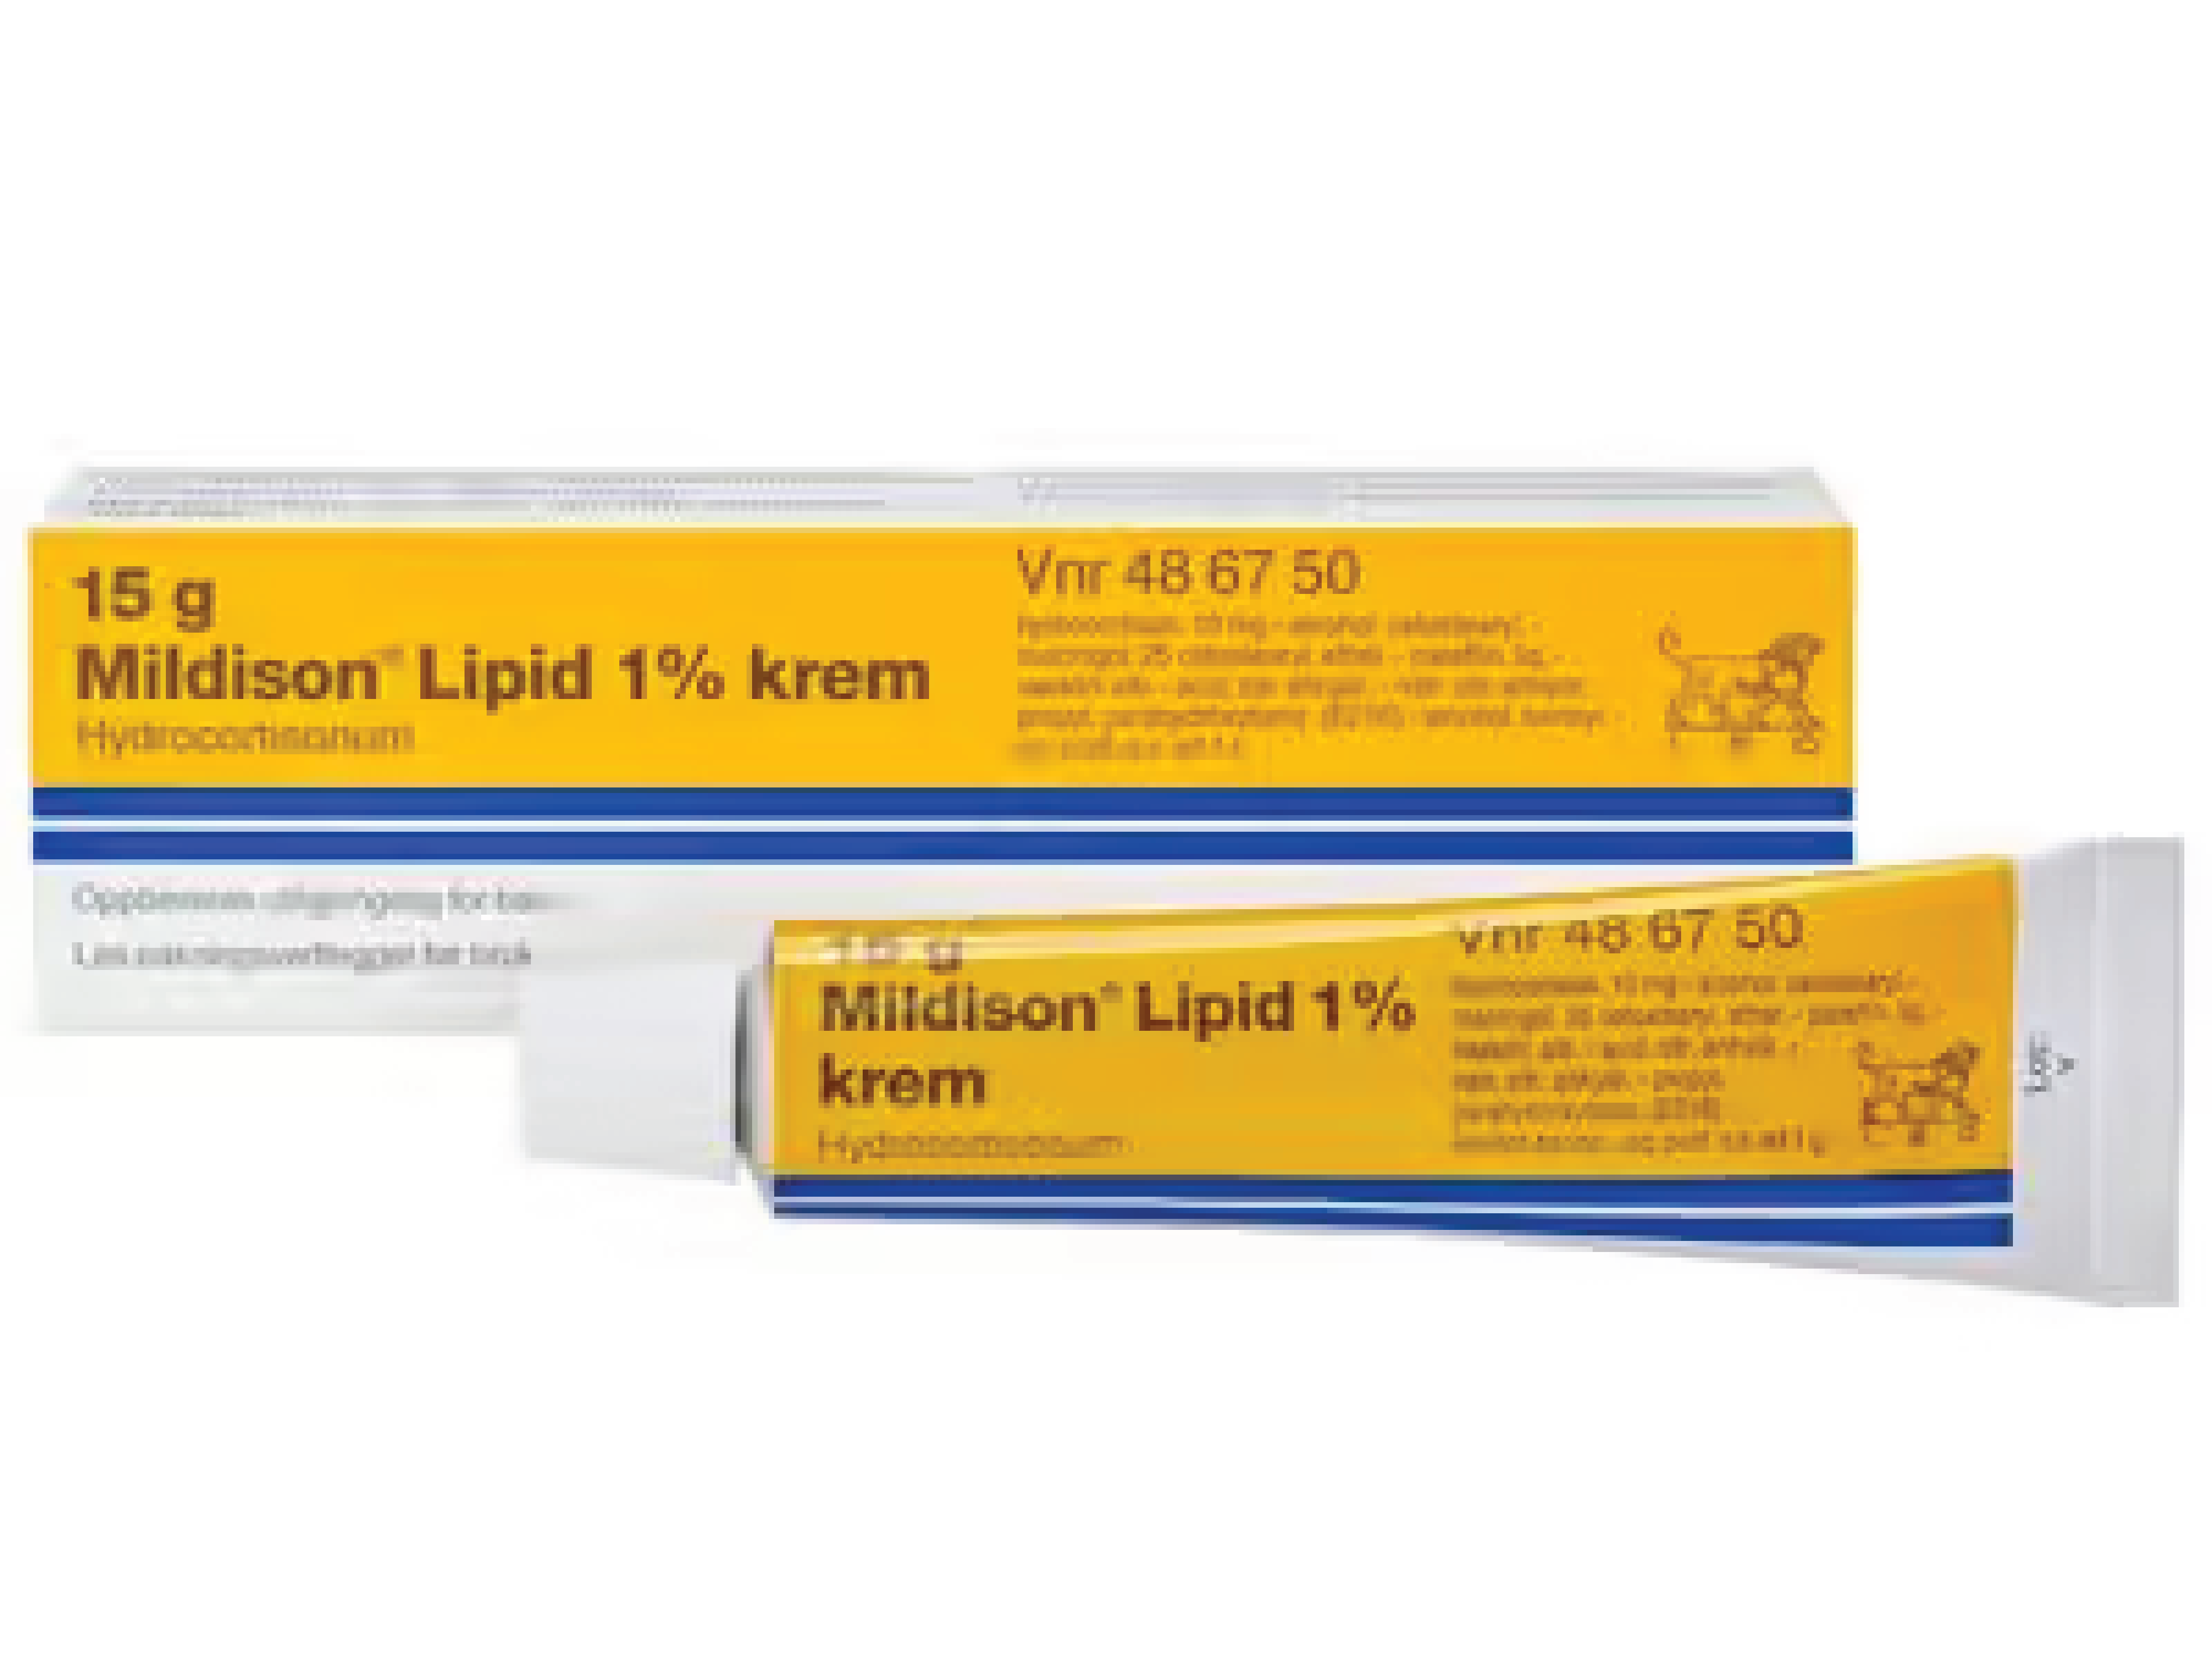 Mildison Lipid krem 1%, 15 g.